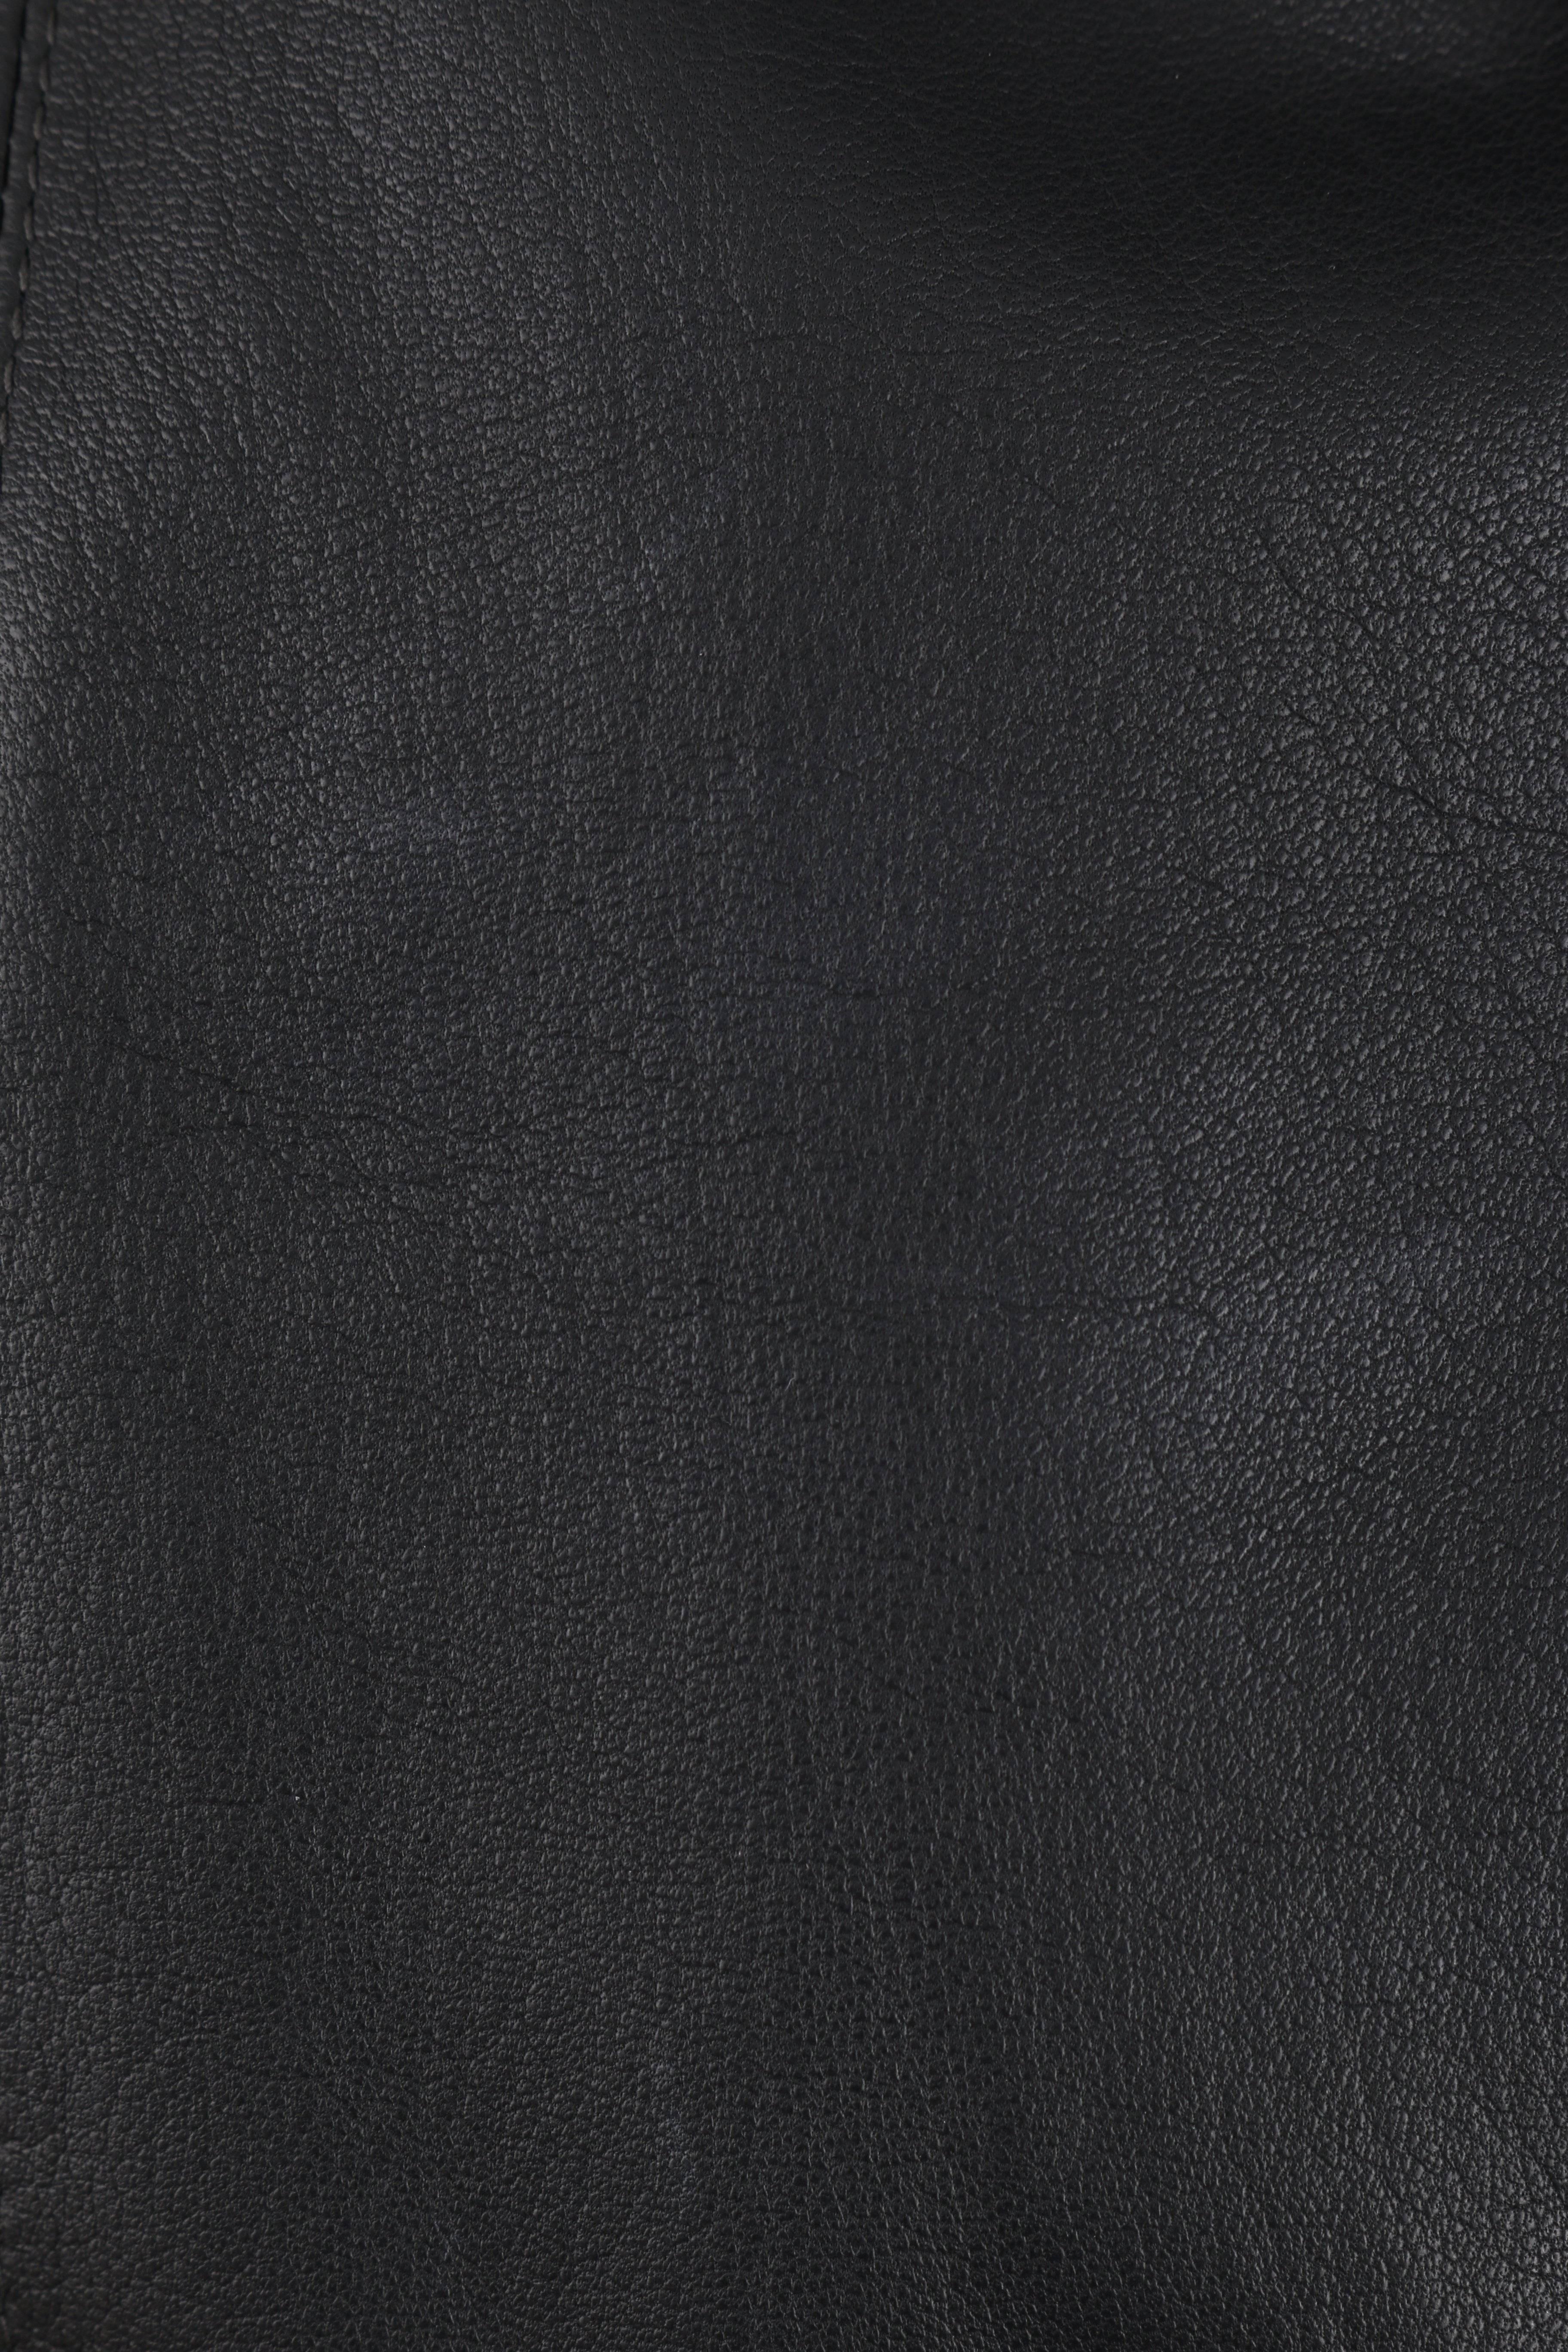 CHANEL 2 Pc Black Lambskin Leather Fur Trim Blazer Skirt Suit Set SZ 38 / 40 02A For Sale 2